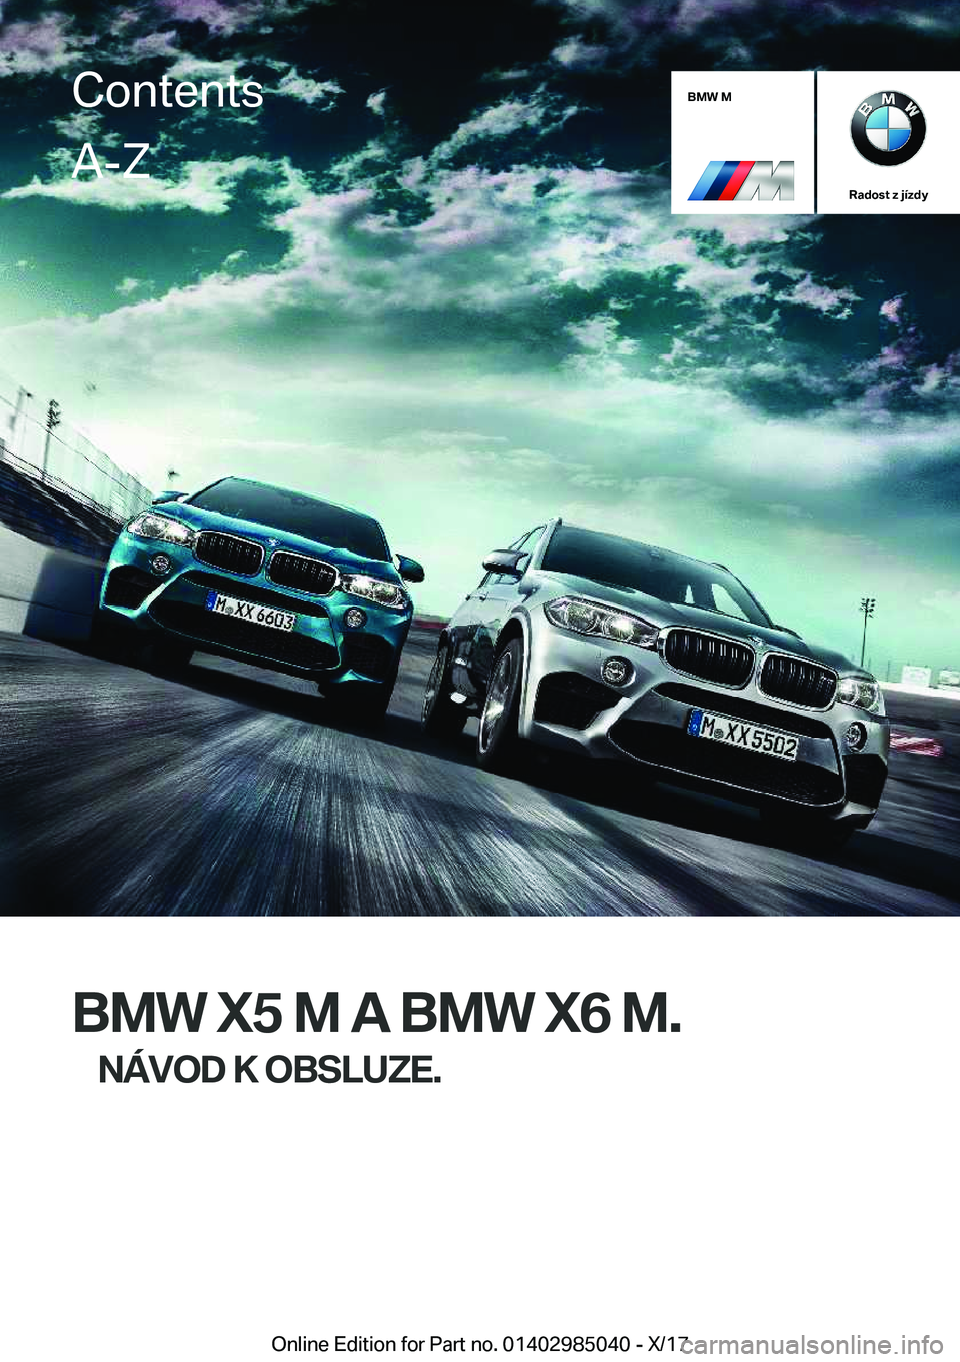 BMW X6 M 2018  Návod na použití (in Czech) �B�M�W��M
�R�a�d�o�s�t��z��j�